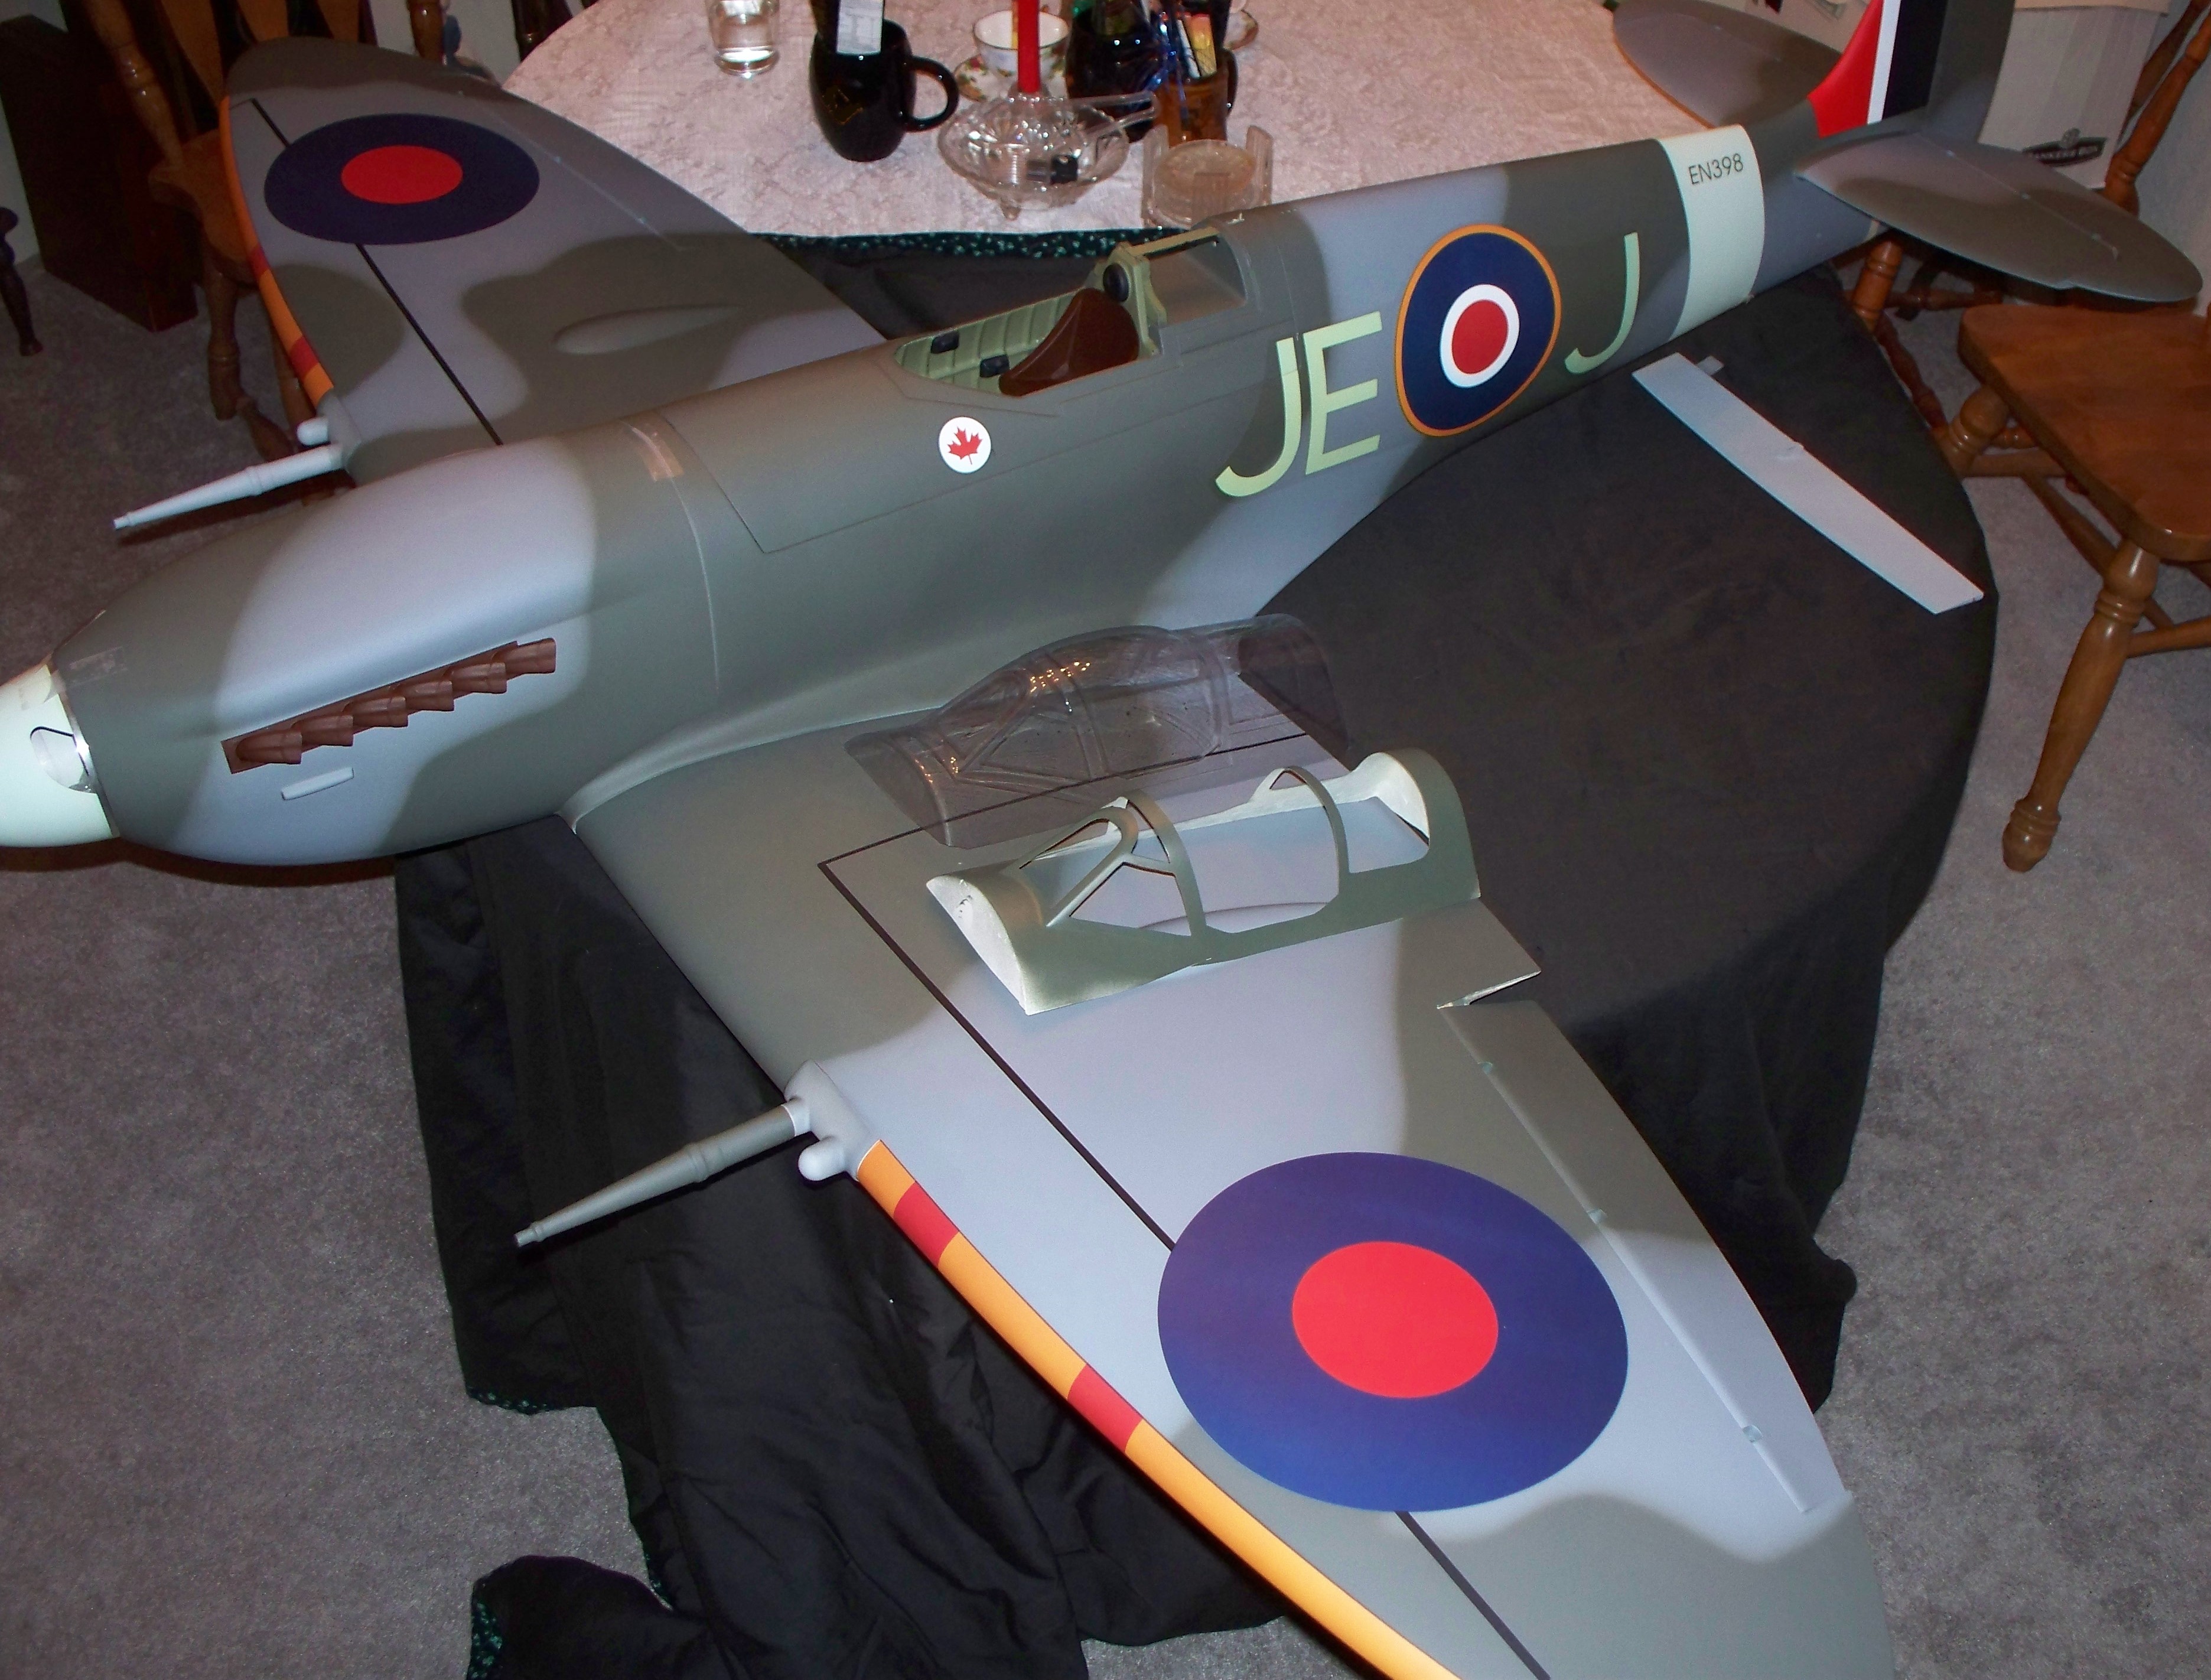 Top RC Models MkIV full Composite Spitfire-a game changer - RCU Forums